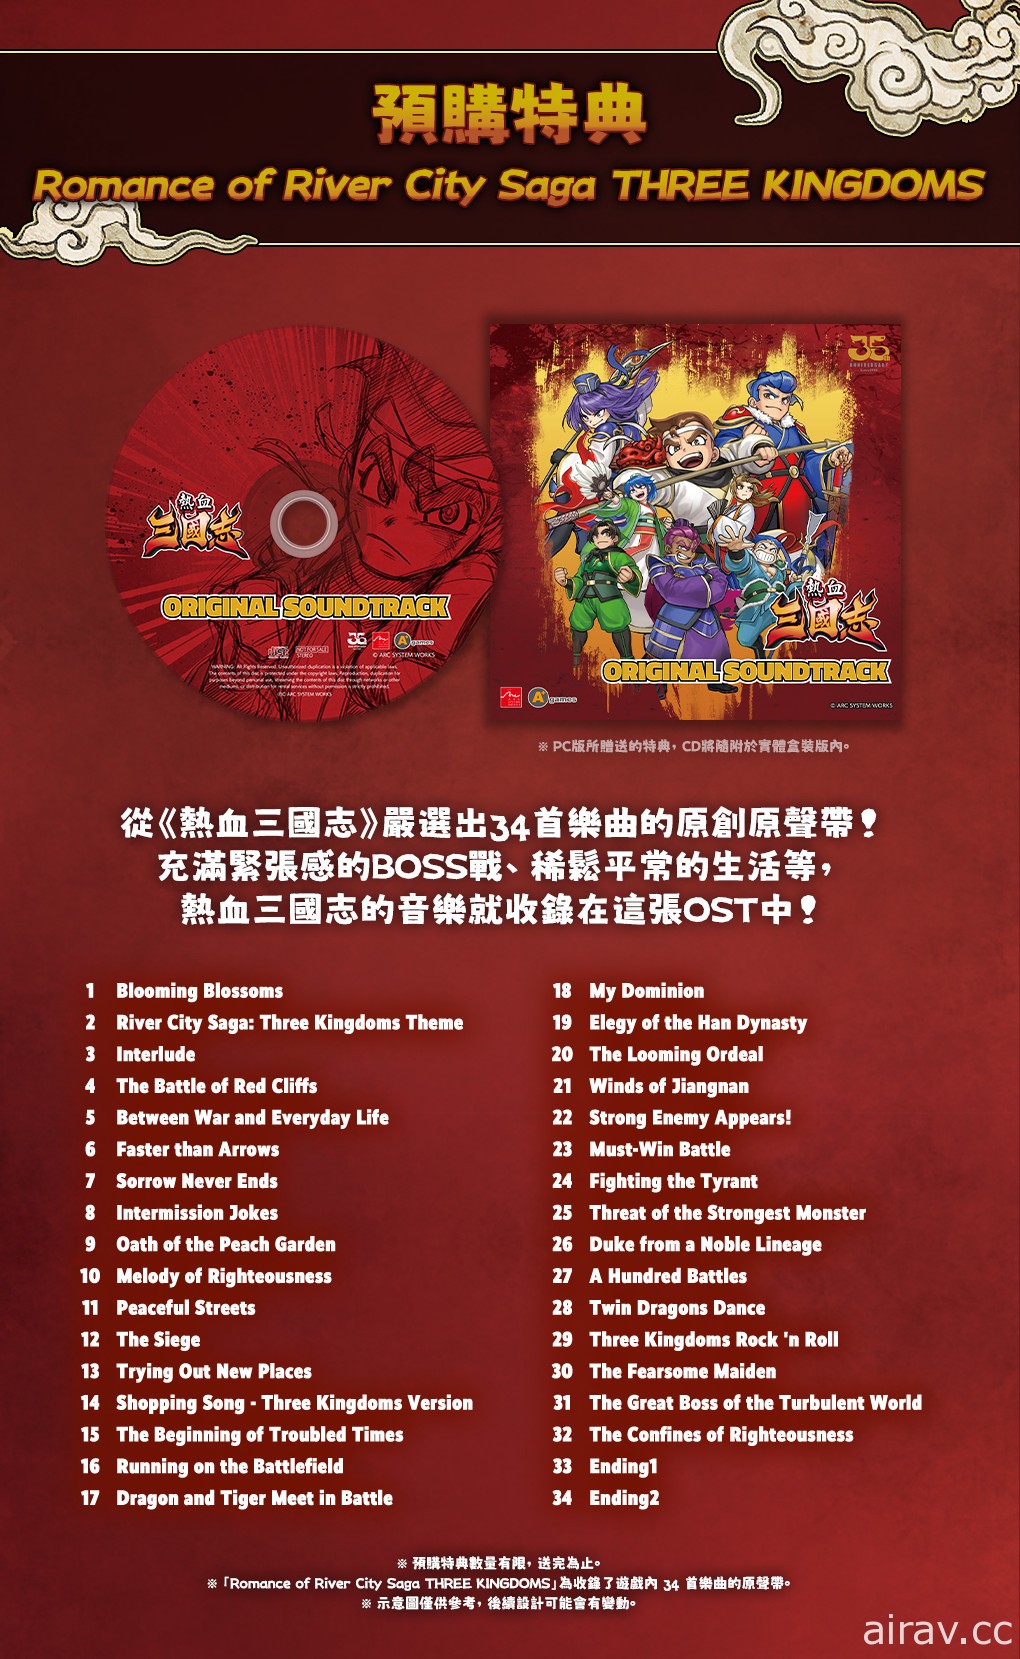 《国夫君的热血三国志》中文版公开实体盒装版预售资讯 将提供原声带 CD 为特典